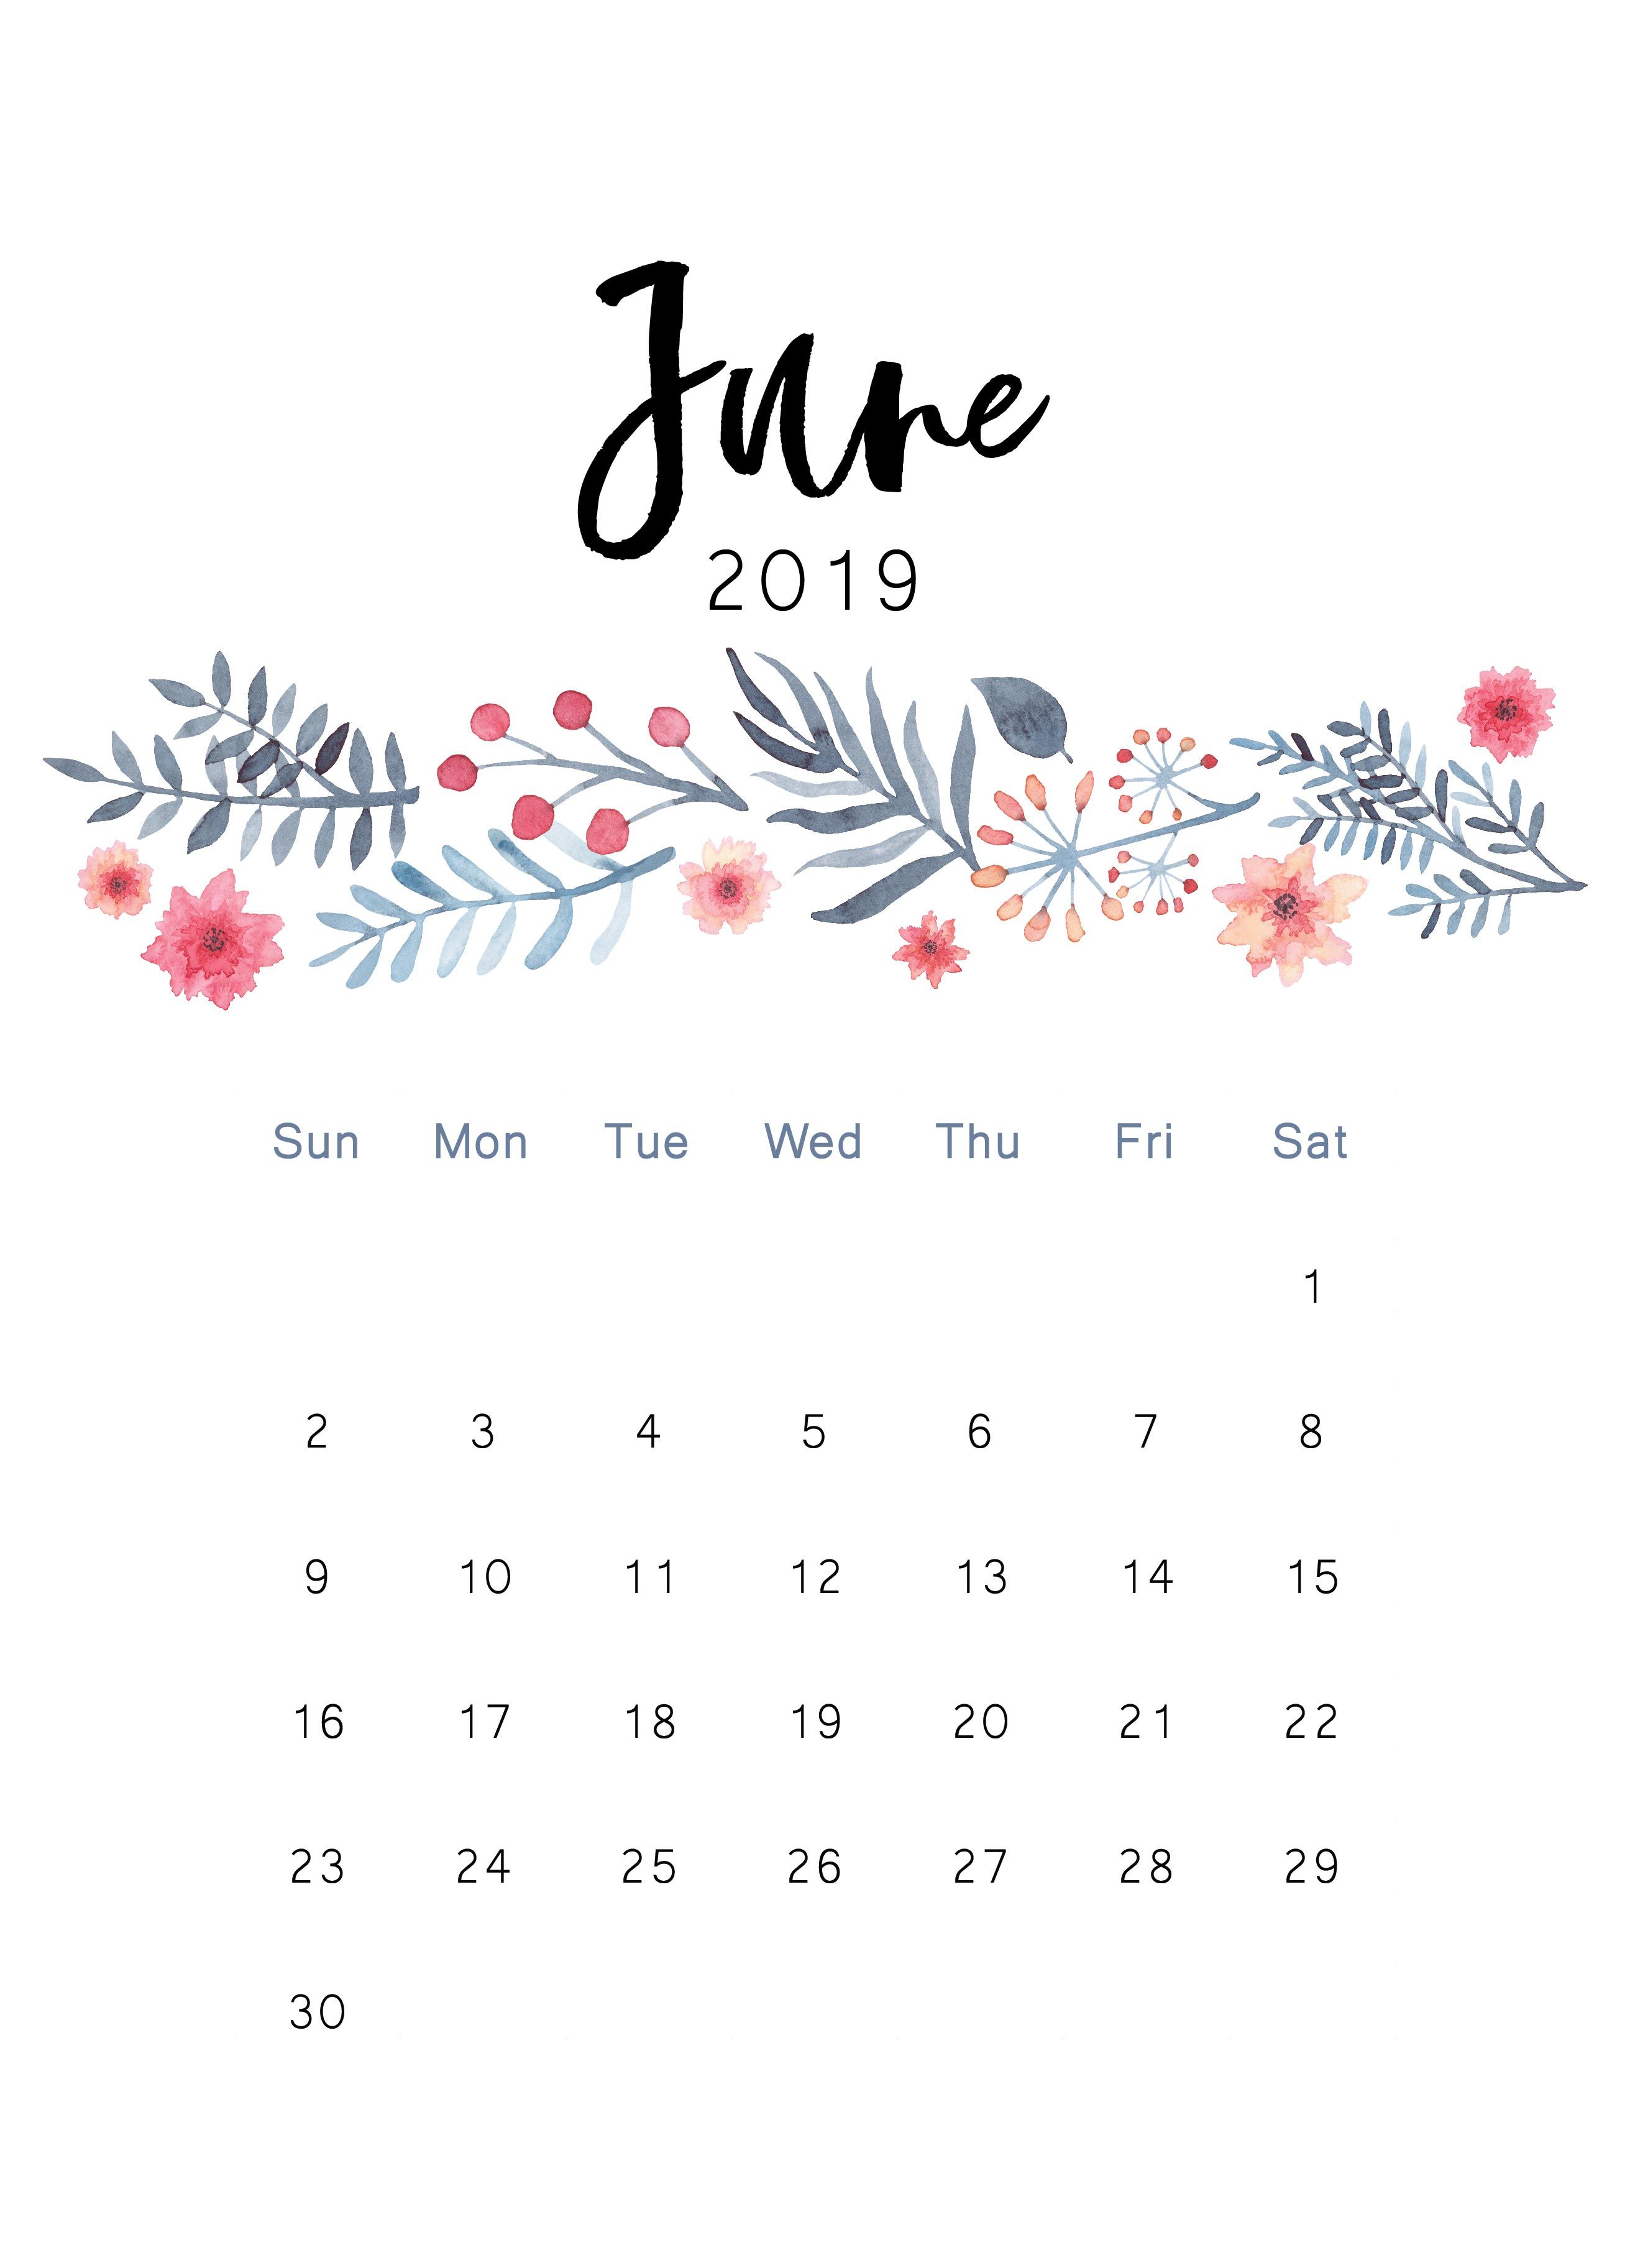 Waterproof June 2019 Calendar Wallpaper For Desktop Iphone 2623x3649